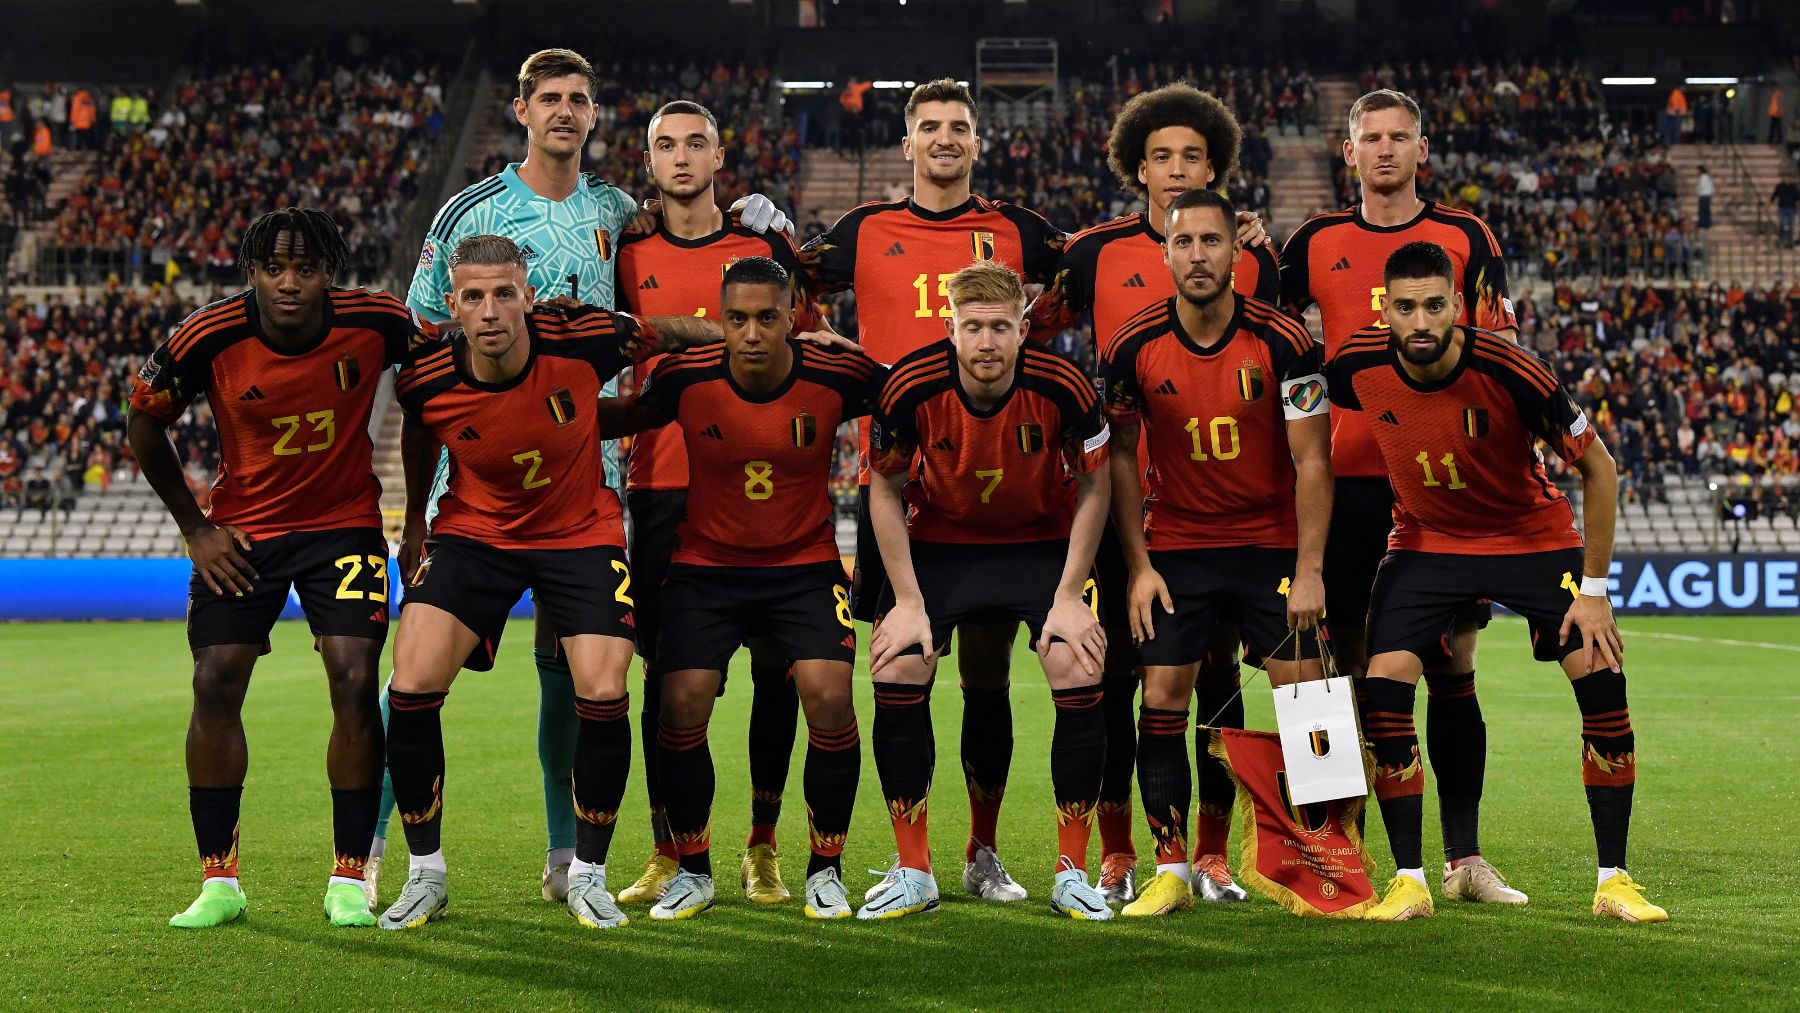 Los jugadores de la selección de Bélgica antes de un partido. (Getty)